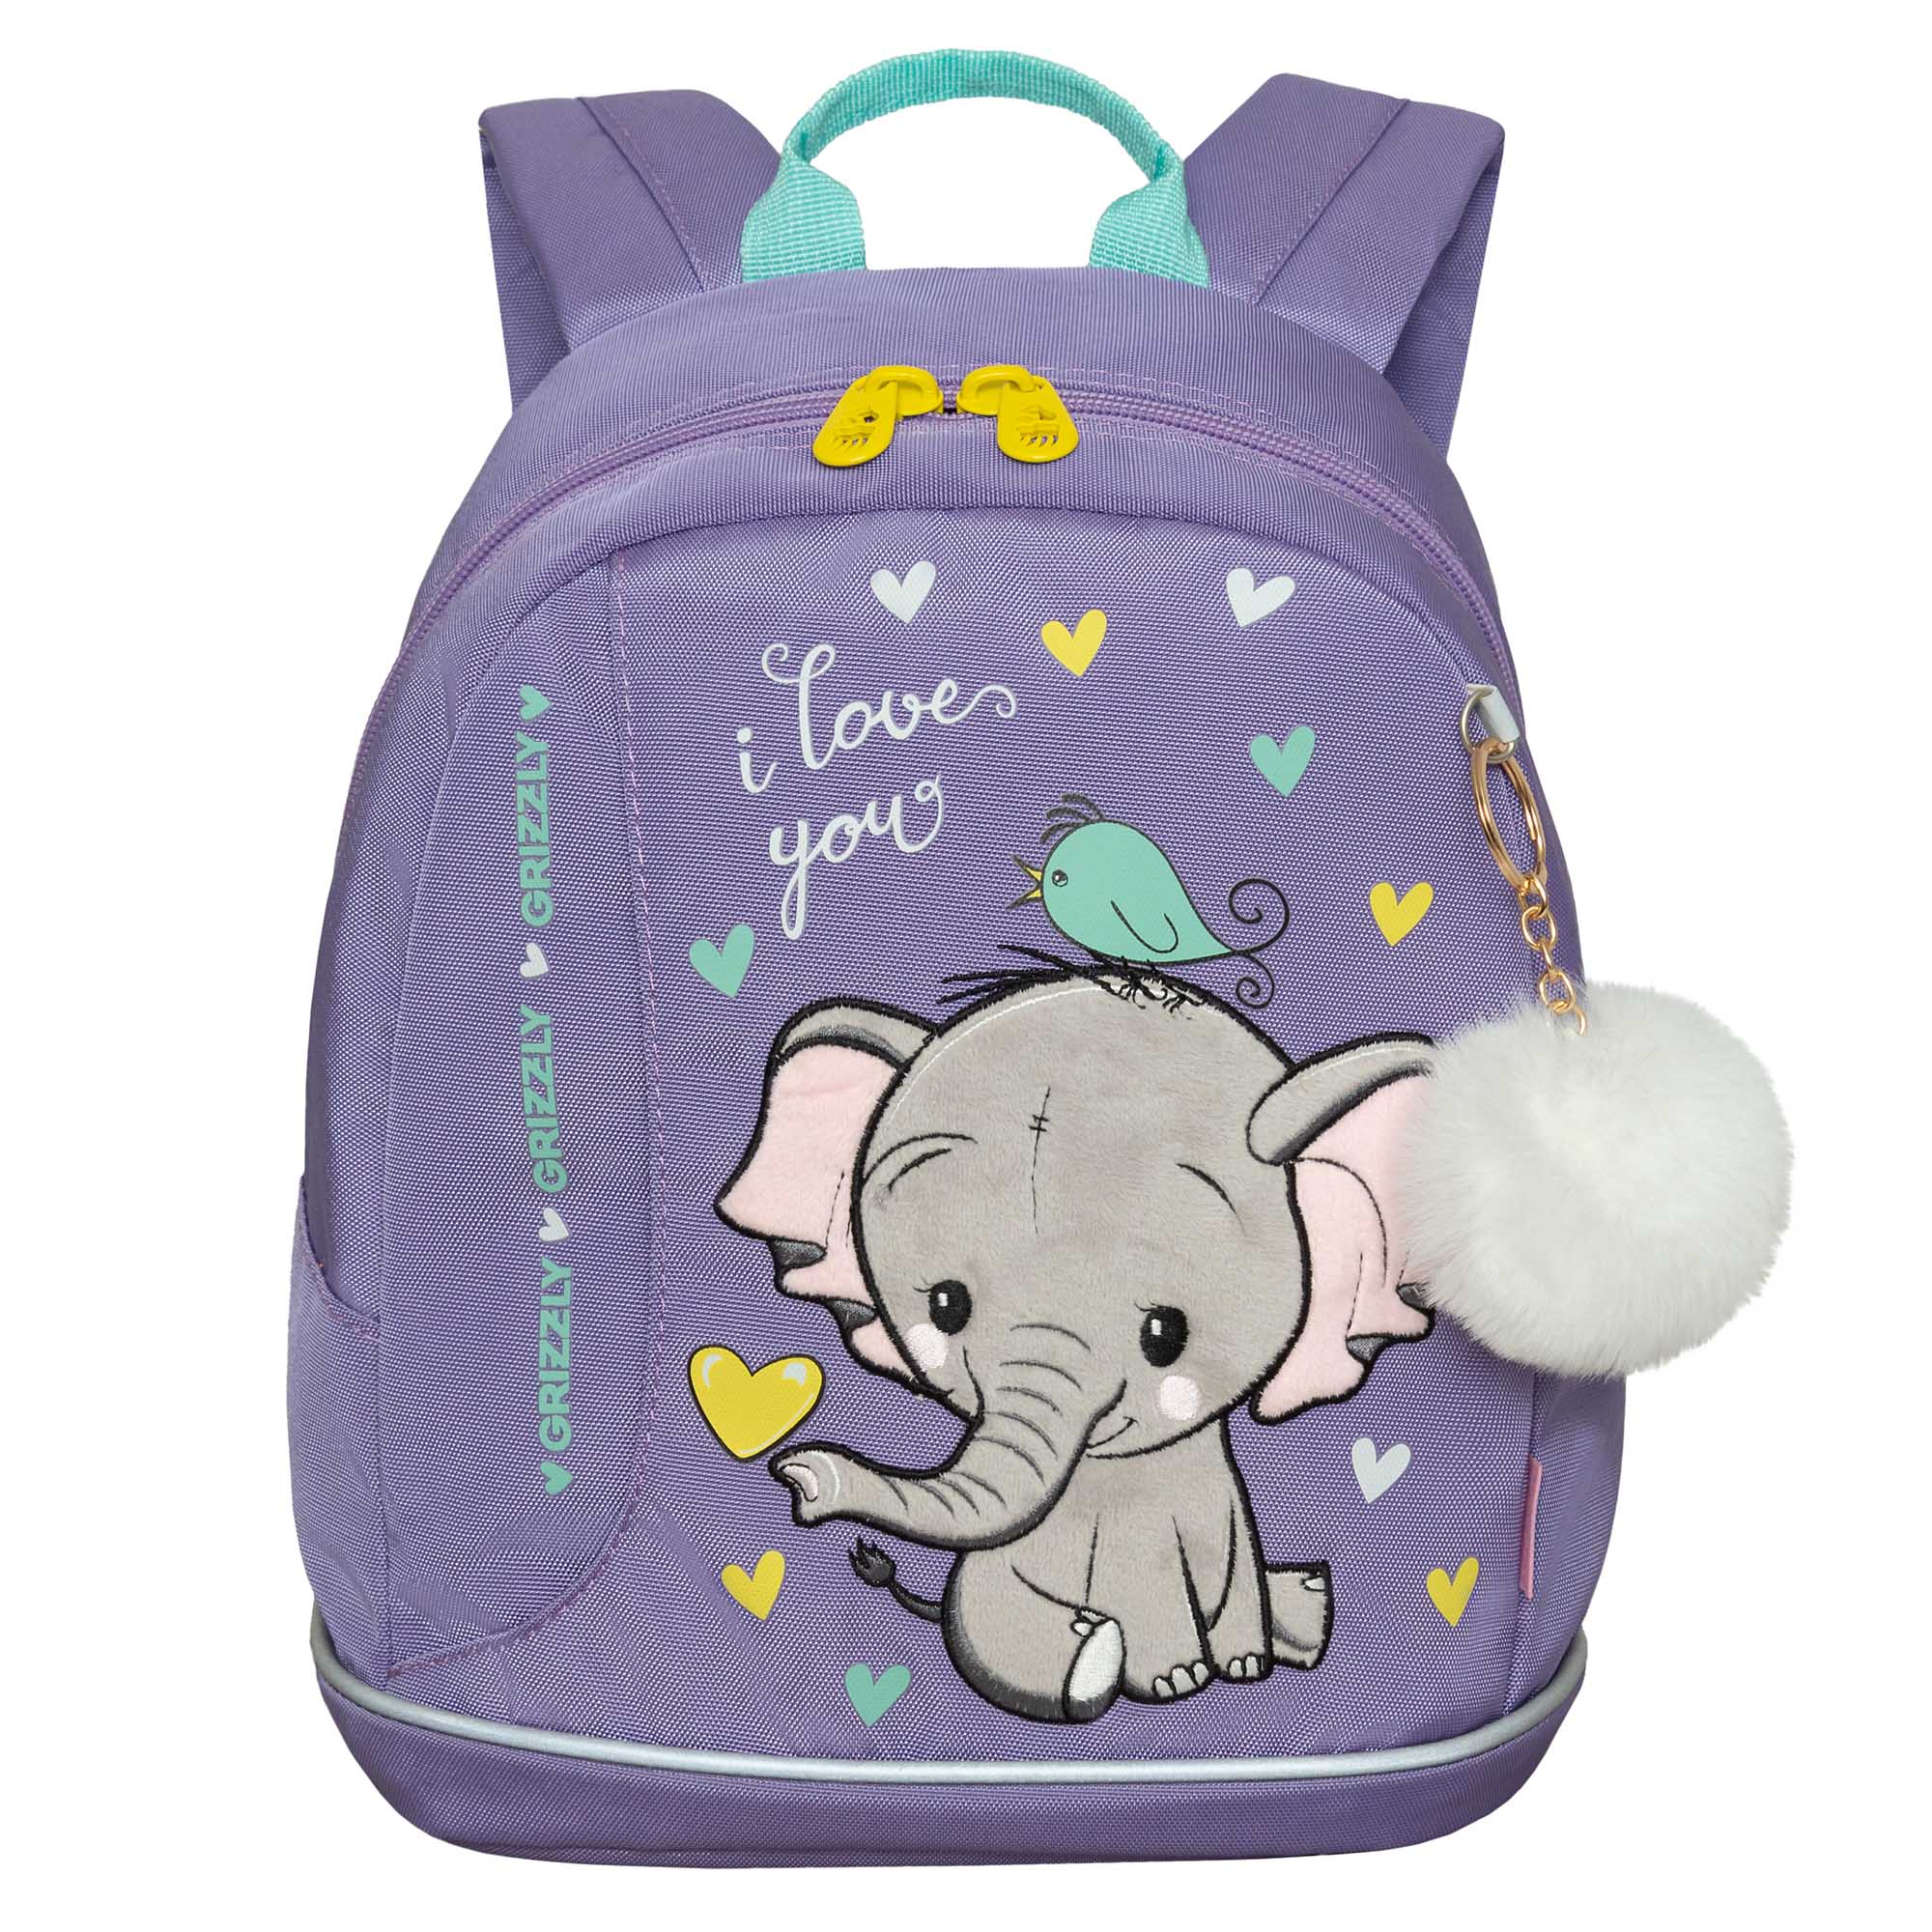 Рюкзак Grizzly дошкольный для девочки в детский сад RK-381-1 (/2 сиреневый)